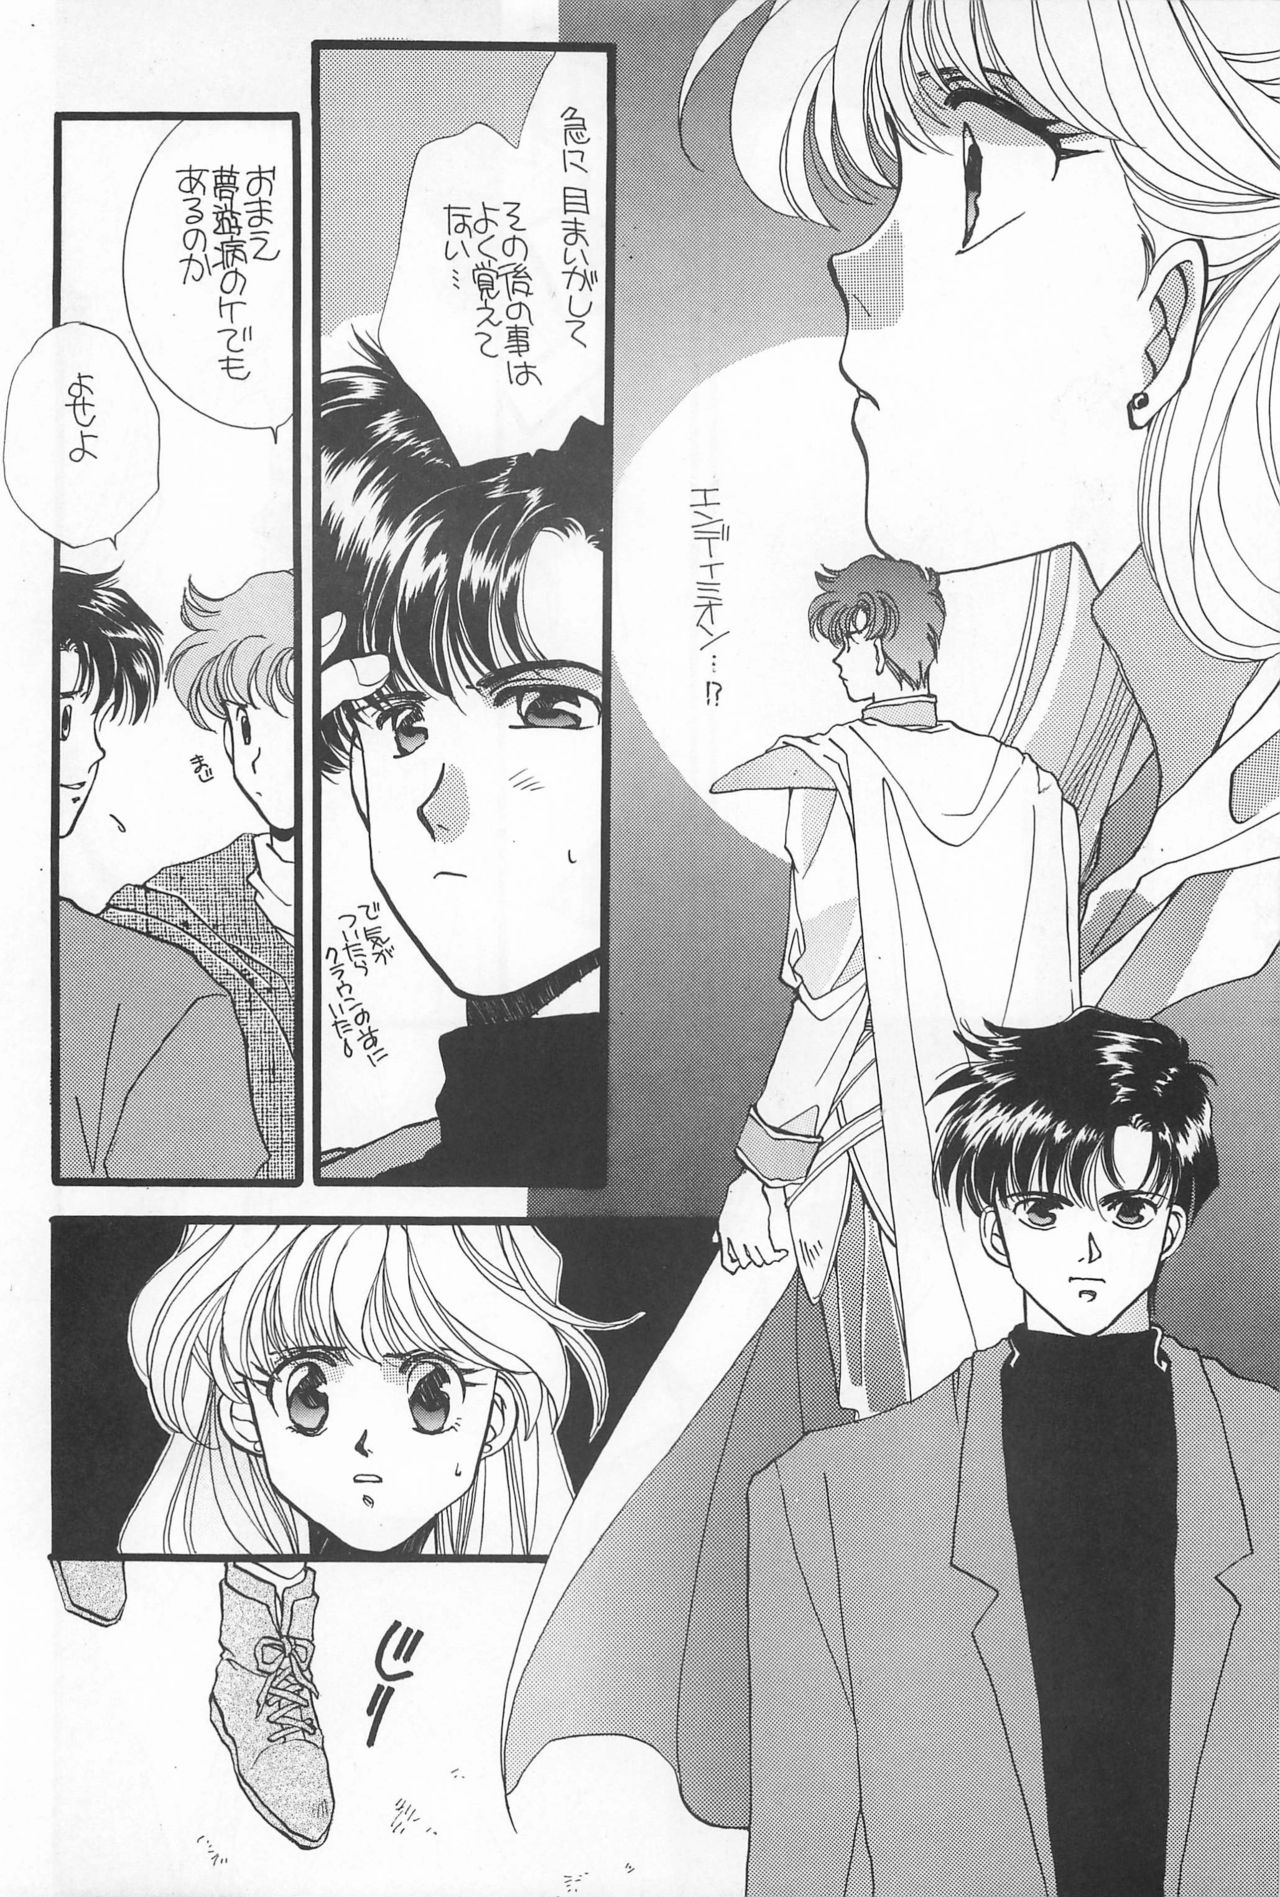 [Hello World (Muttri Moony)] Kaze no You ni Yume no You ni - Sailor Moon Collection (Sailor Moon) 93